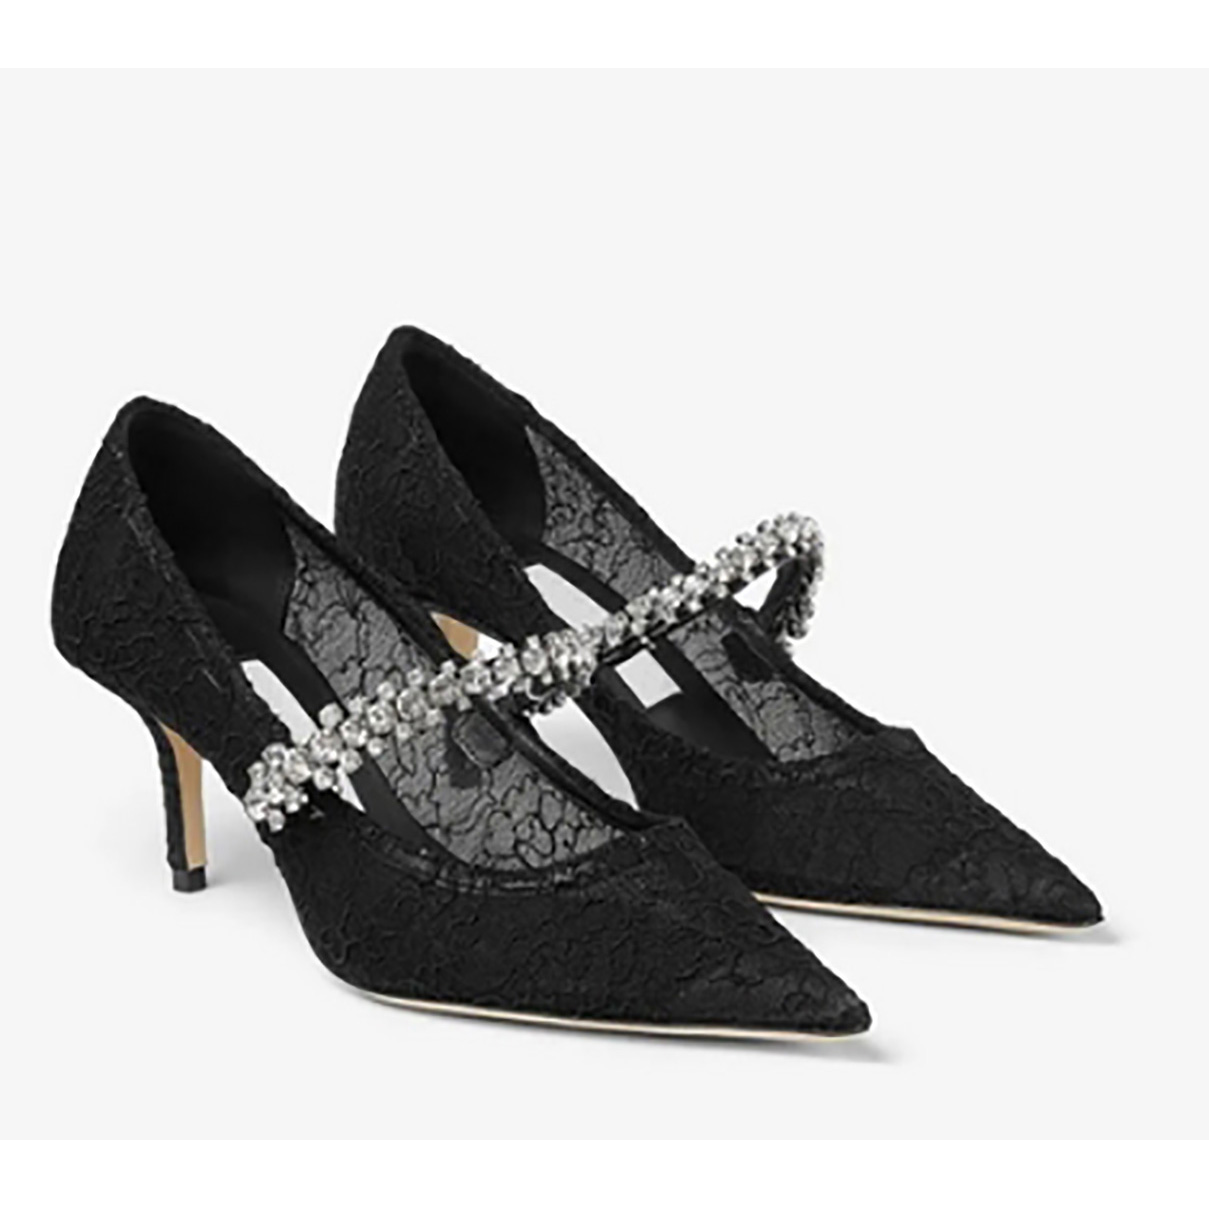 Marca de luxo sapatos femininos formal bing bomba patenteada em couro pontual ribbon designer de saltos altos femininos feitos na Itália, tamanhos 35-42 com caixa